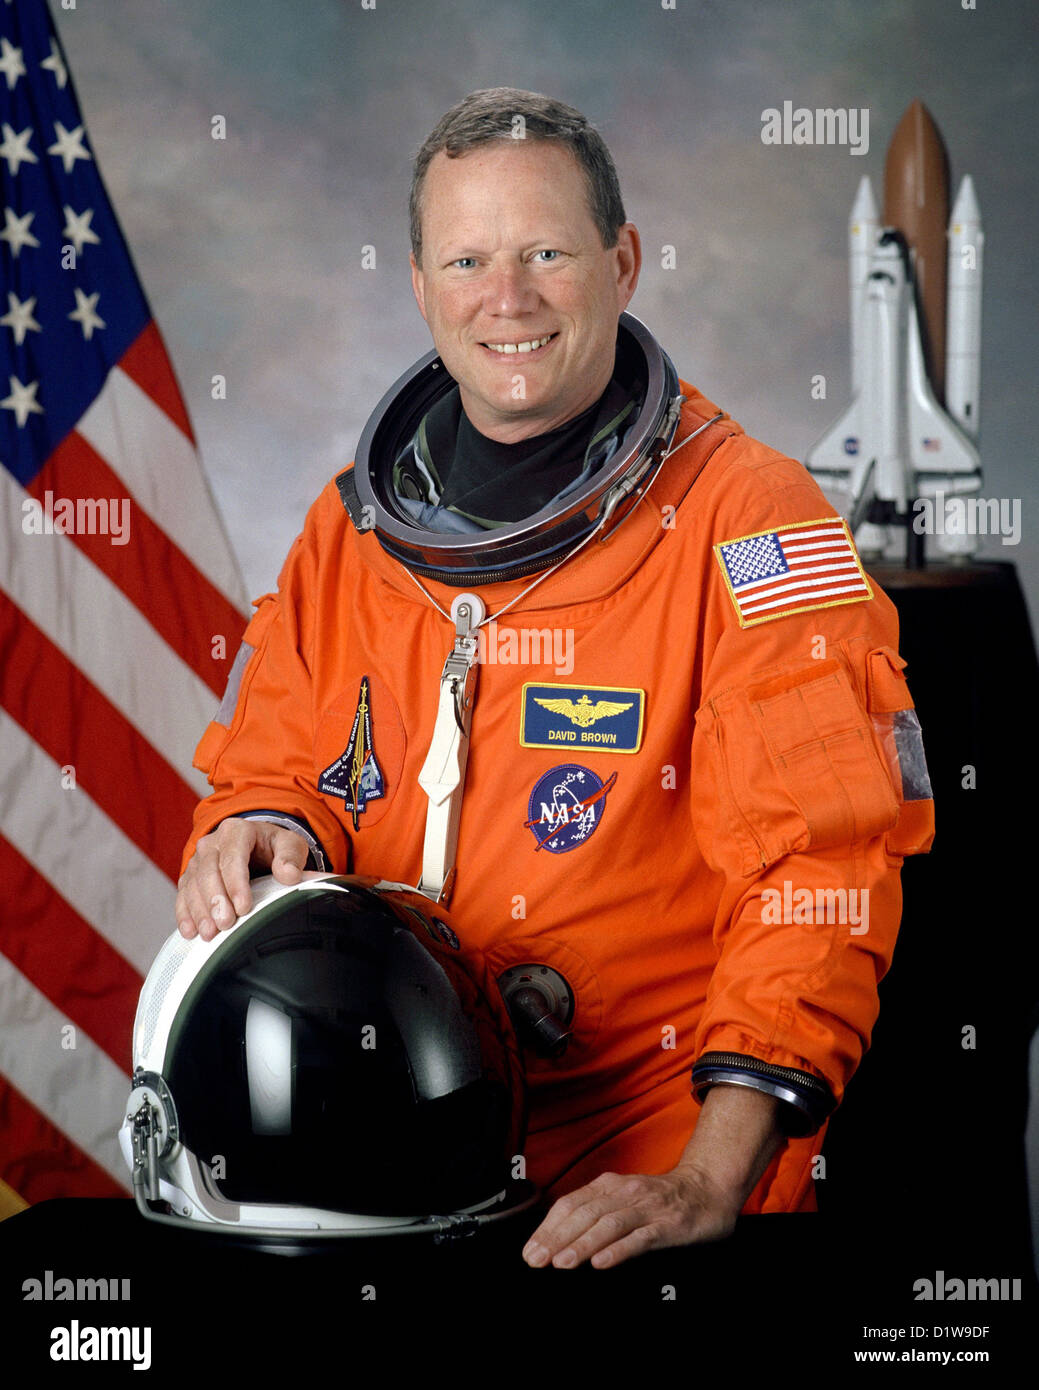 David M. Brown, US-amerikanischer Astronaut, der während der gescheiterten Wiedereintritt des Space Shuttle Columbia gestorben. Stockfoto